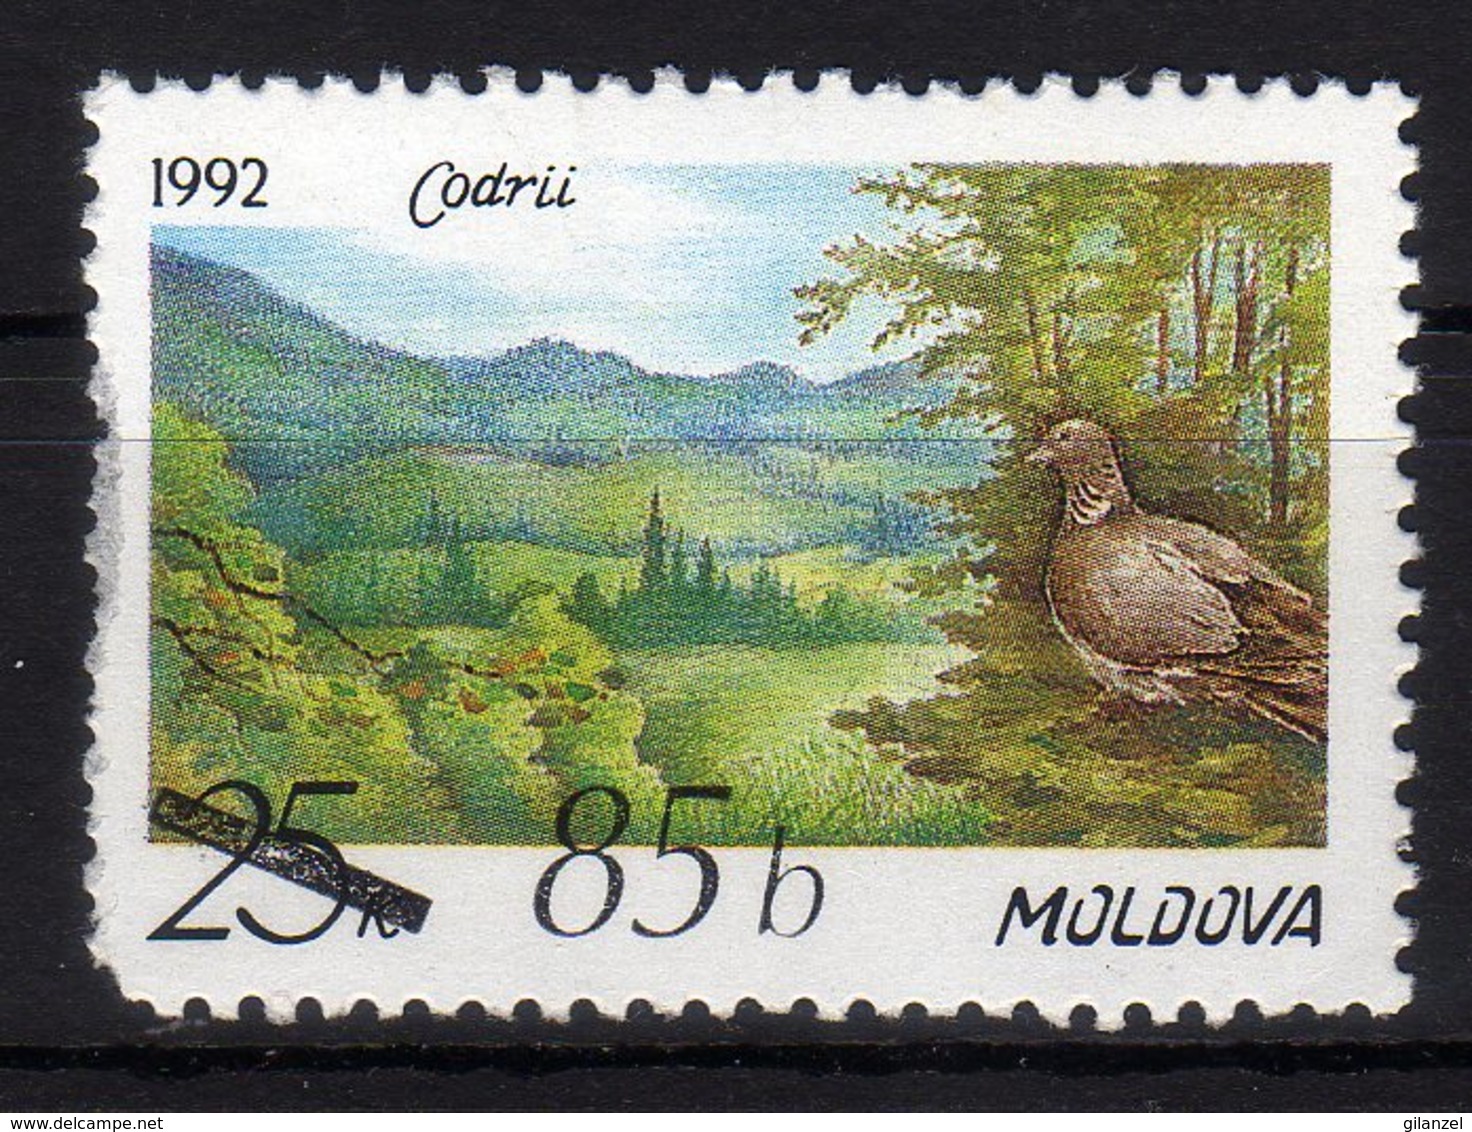 Moldova Moldavia 2007 MNH Overprint On Stamp "Forest Reserve Codrii" - Moldavia